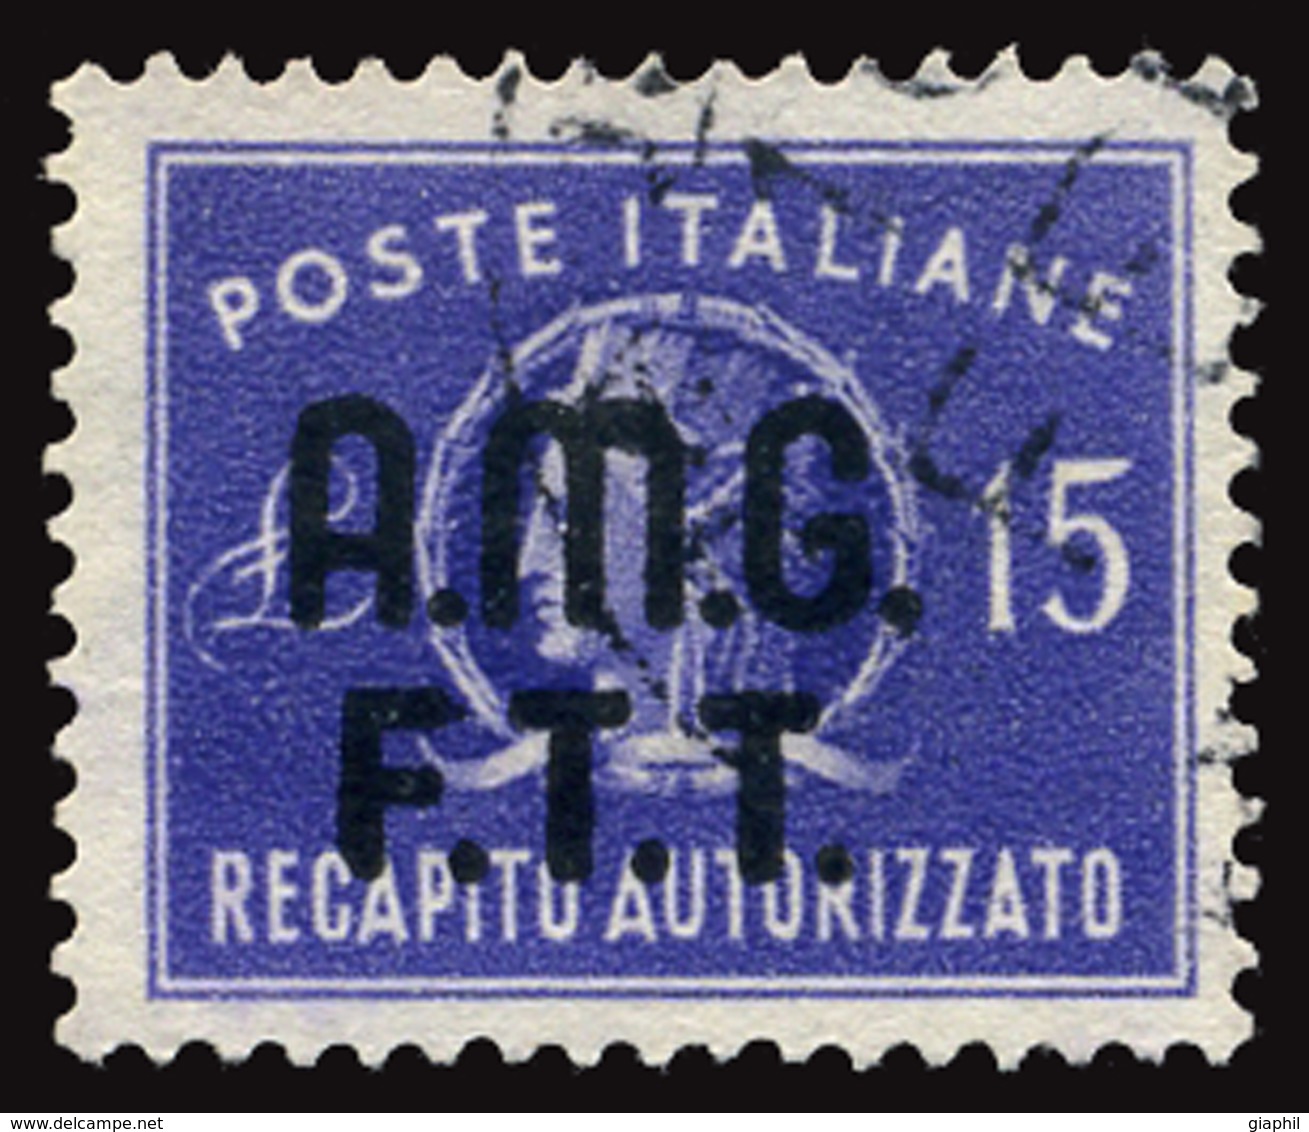 ITALY ITALIA TRIESTE A 1949 RECAPITO AUTORIZZATO 15 L. (Sass. 3) USATO OFFERTA! - Used